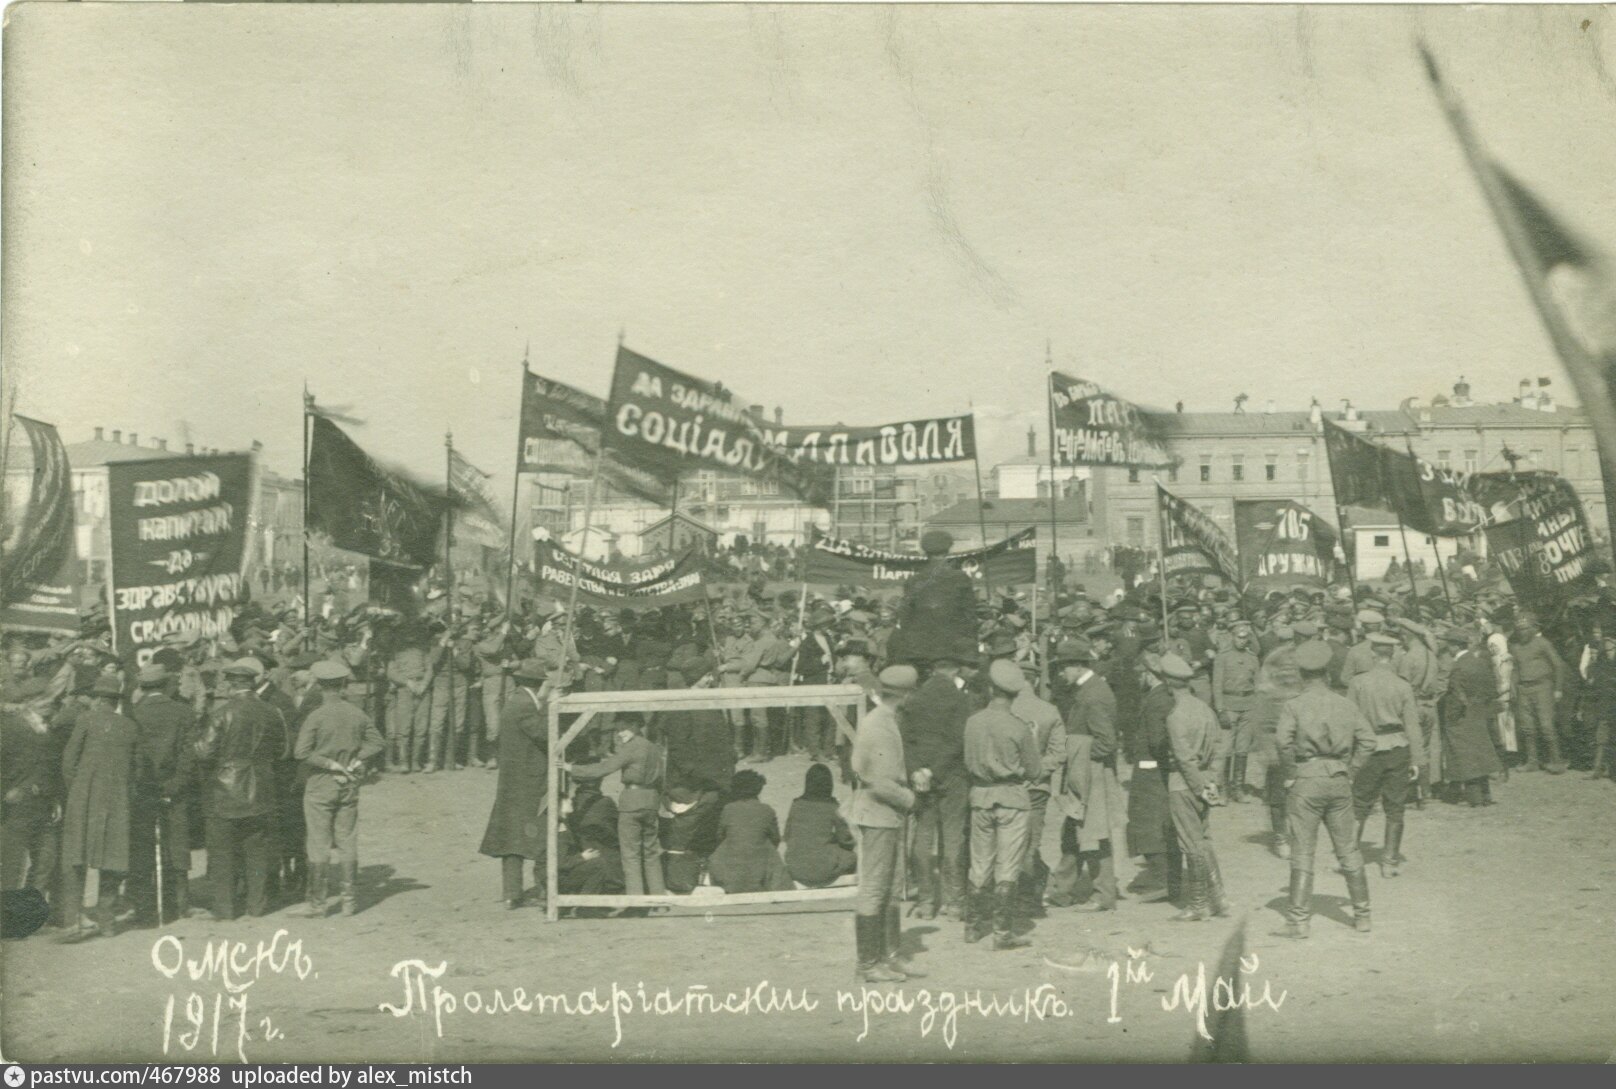 1 мая 1917. Омск 1917. Фото Омска 1917 года. Демонстрация 1 мая 1917 г. в Омске. Революция в Омске 1917.